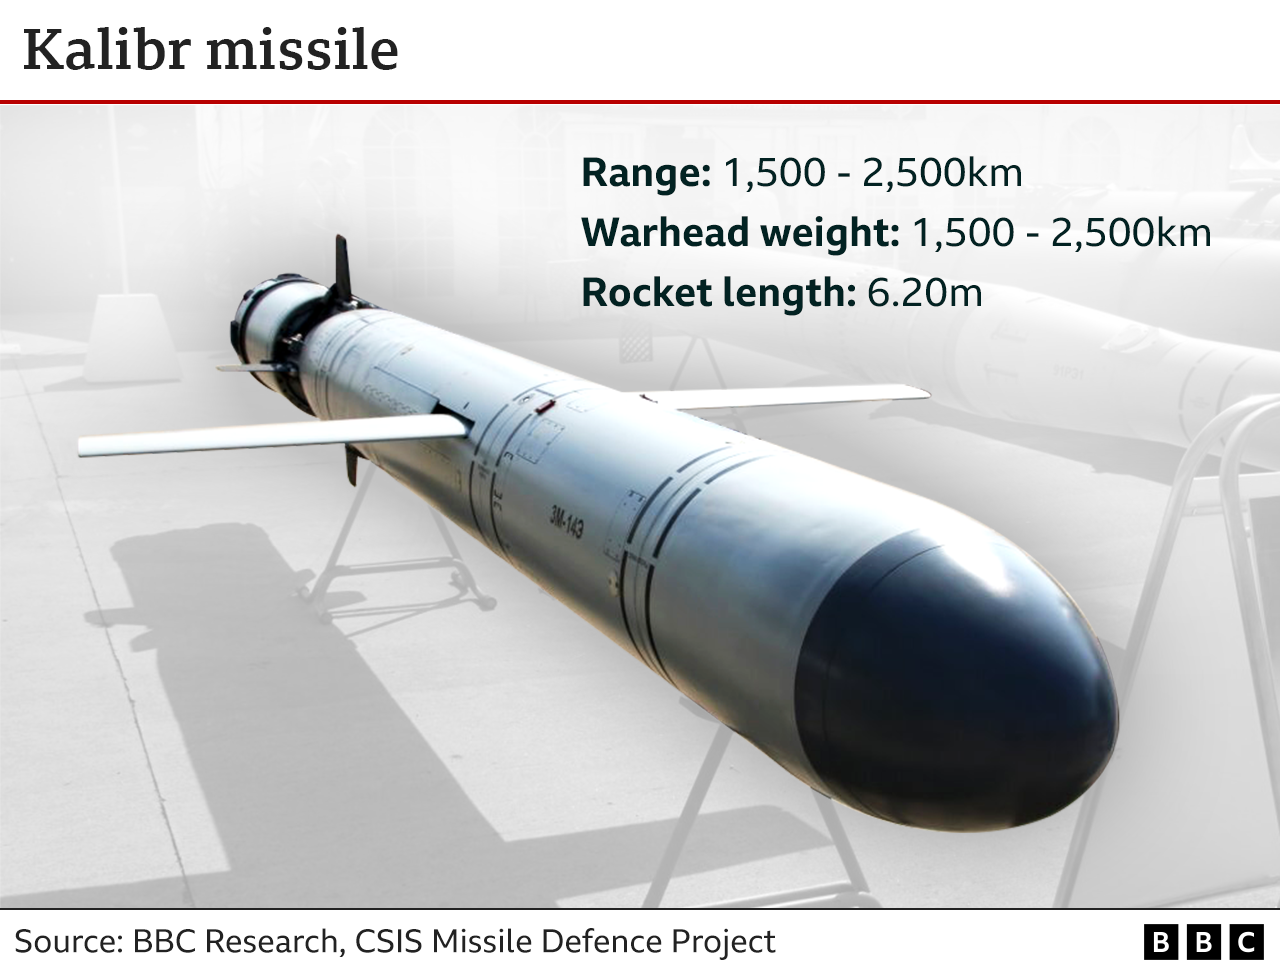 Kalibr missile